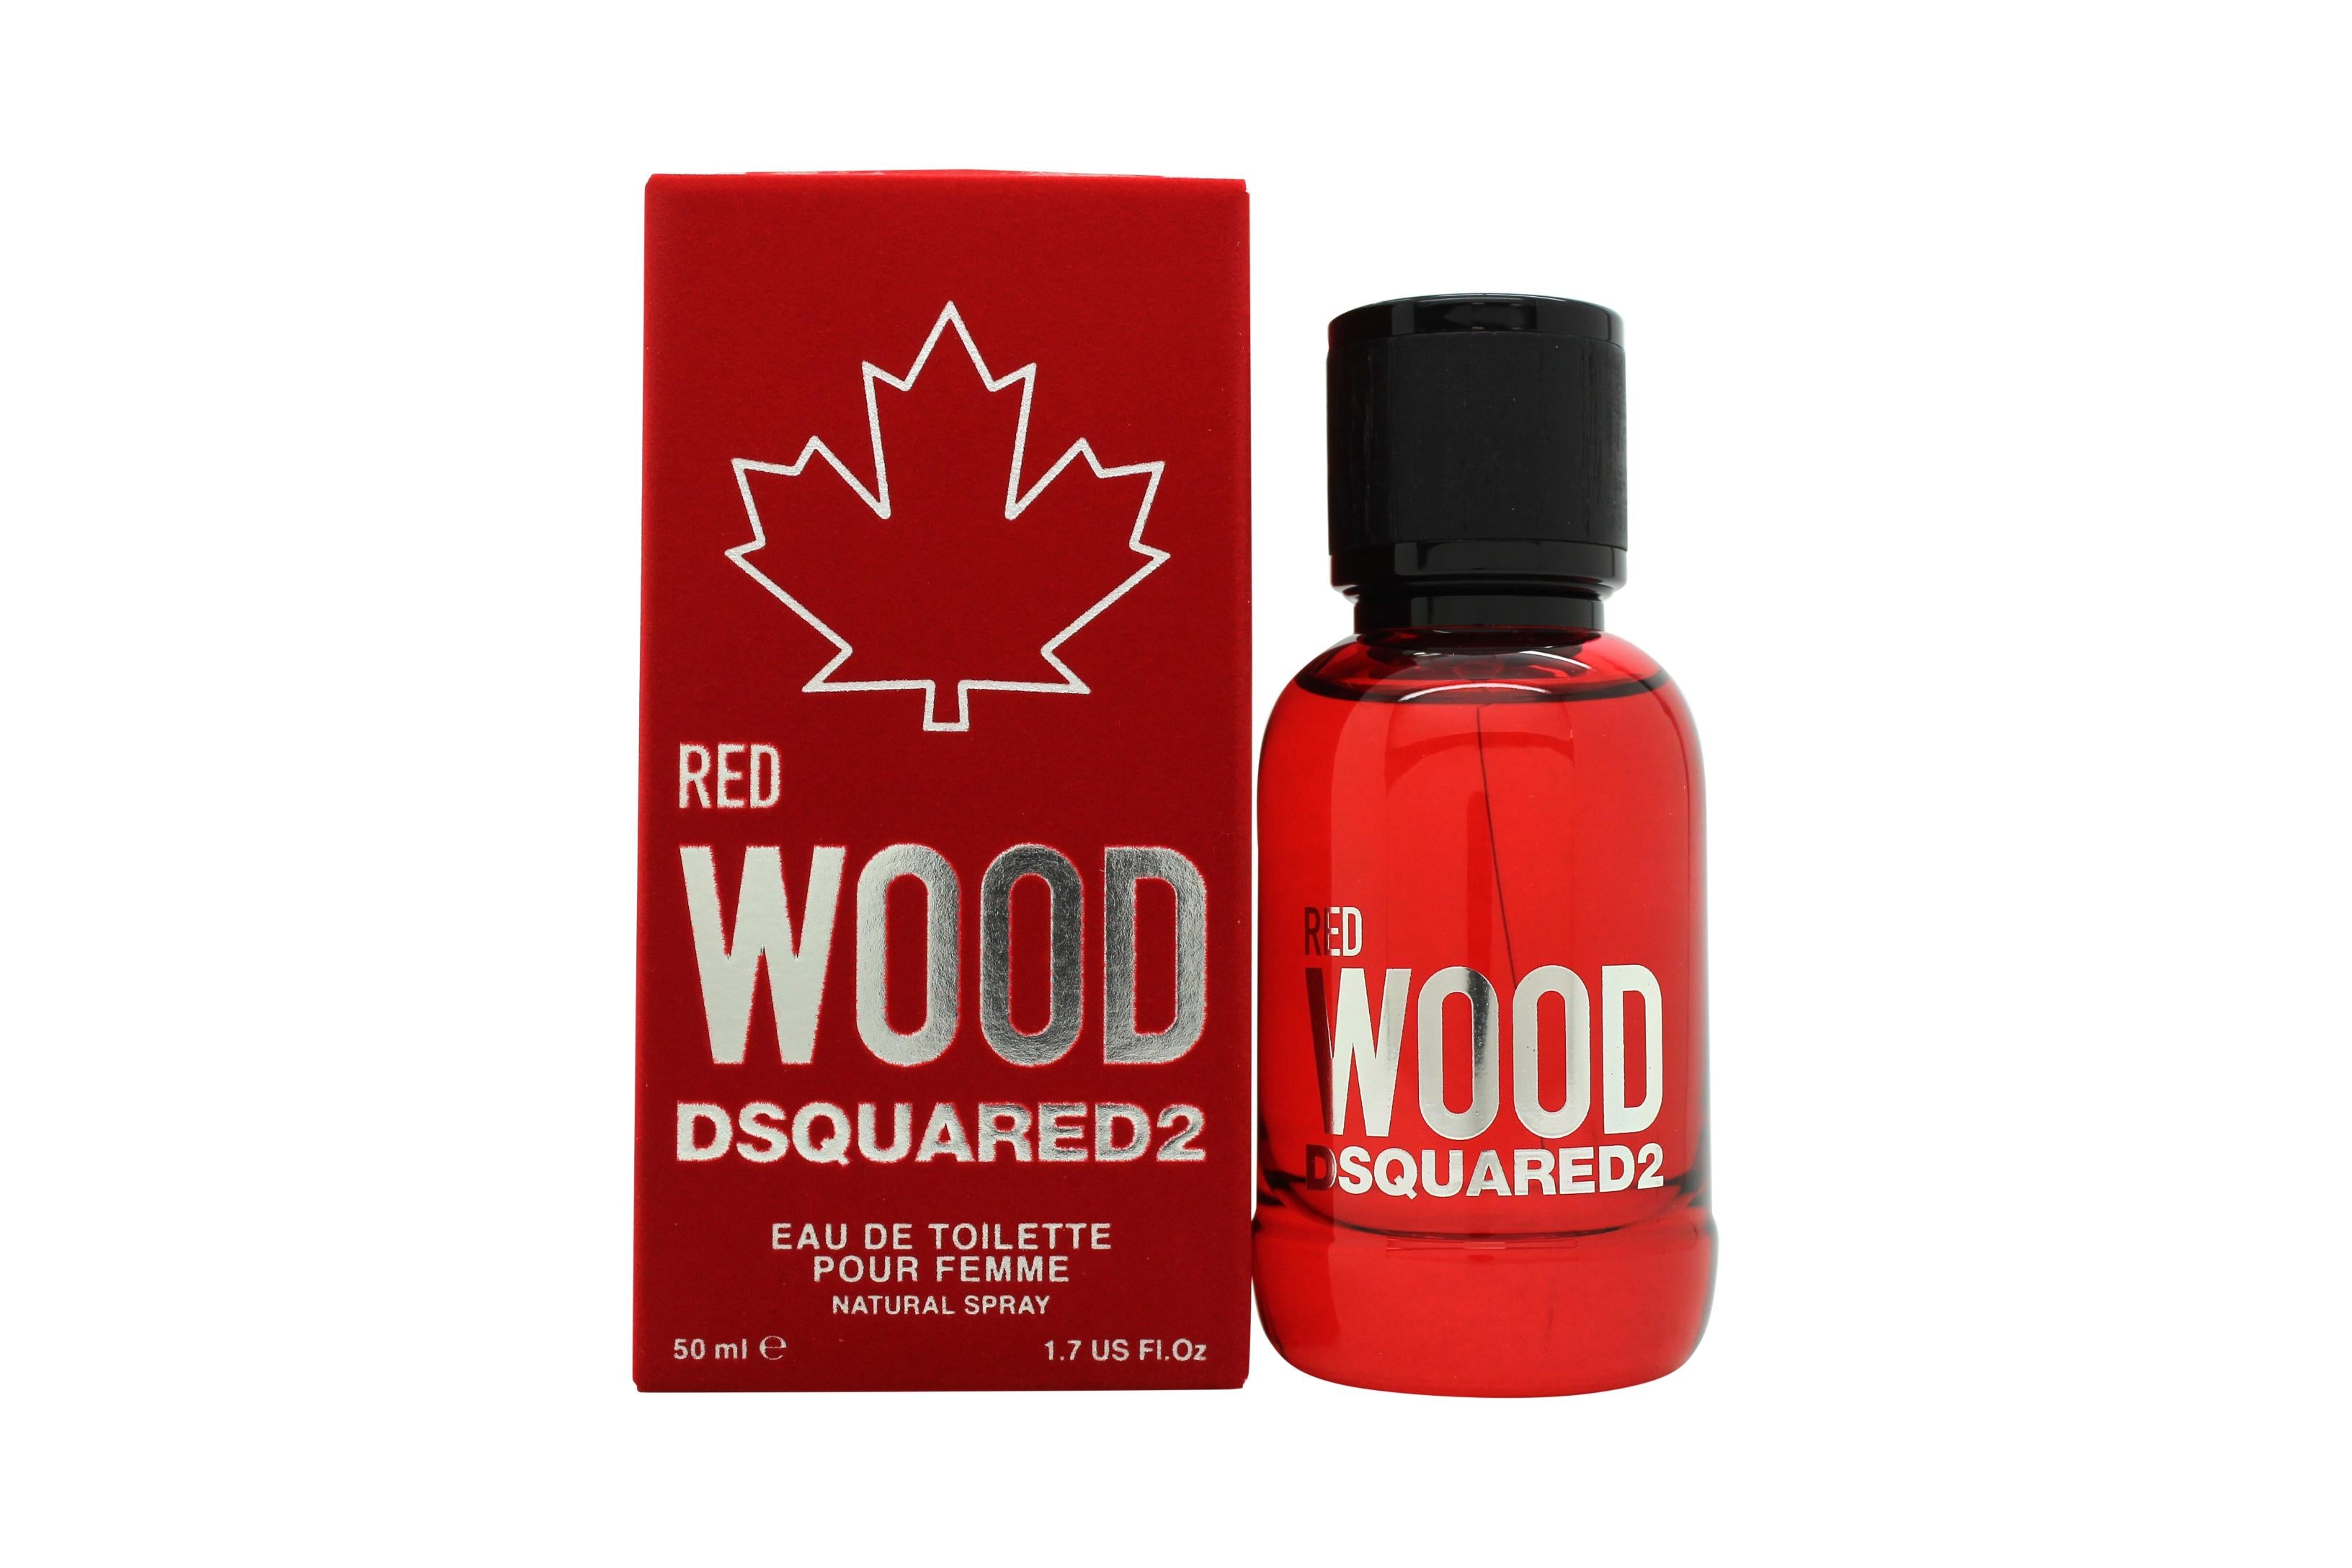 View DSquared² Red Wood Eau de Toilette 50ml Spray information